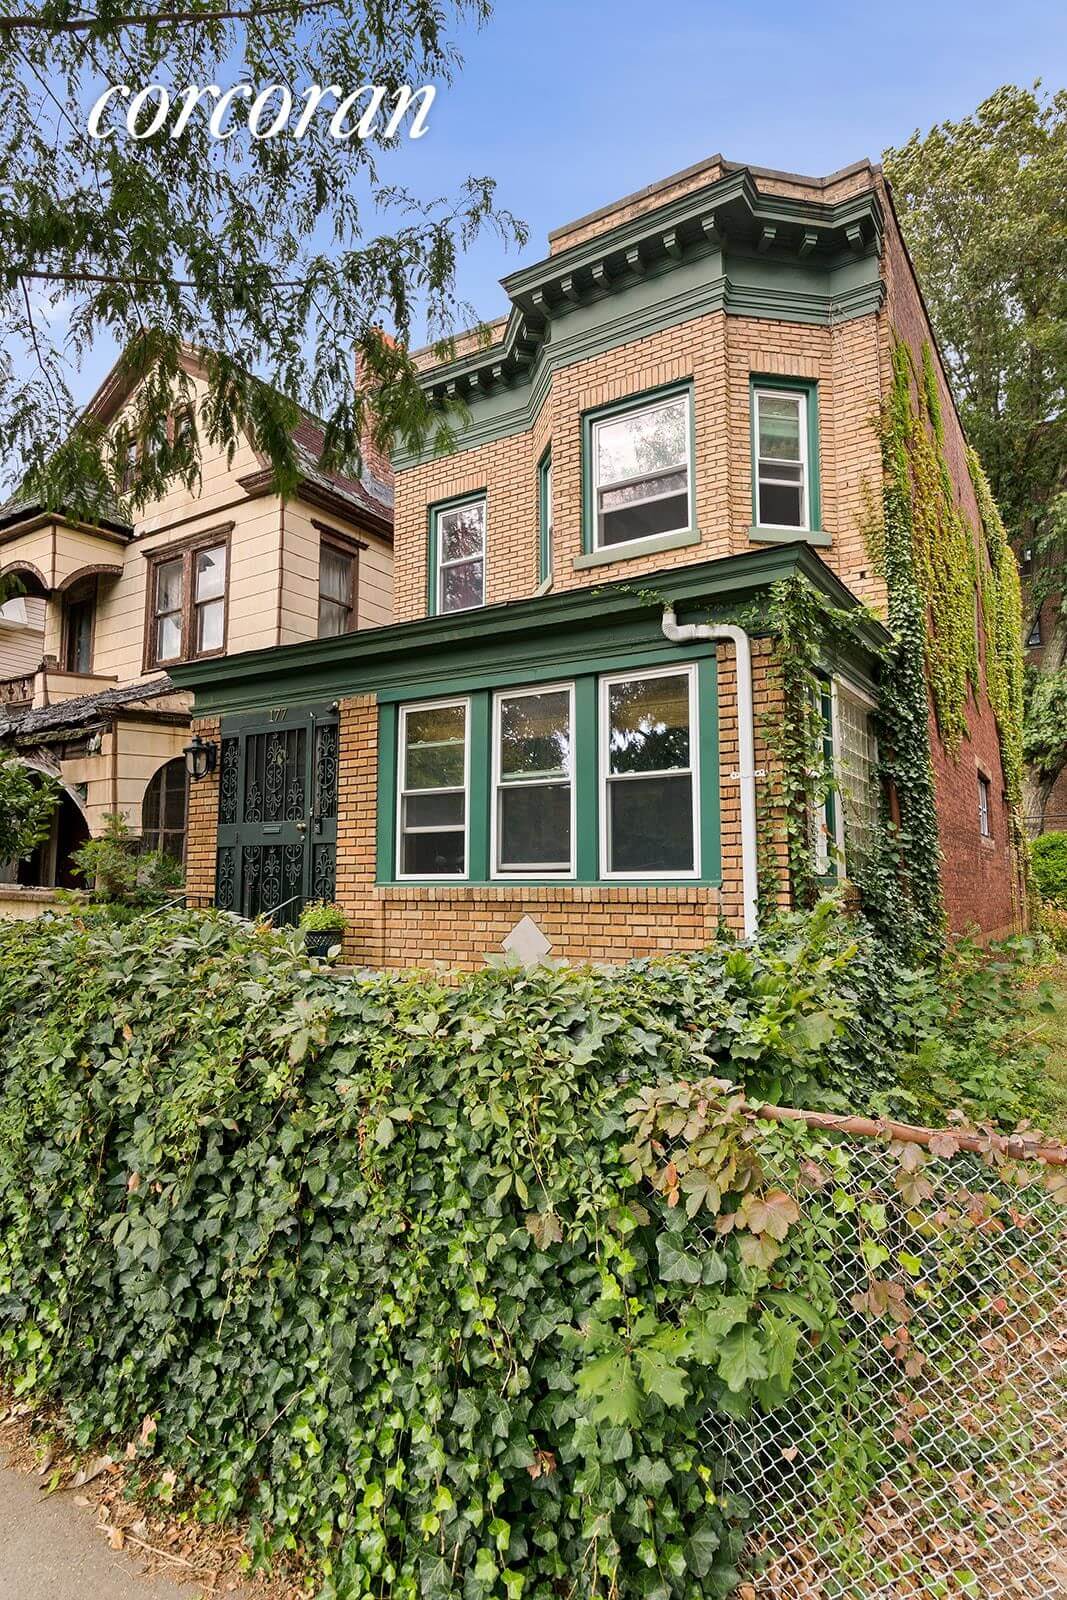 177 wintrhop street brooklyn home for sale